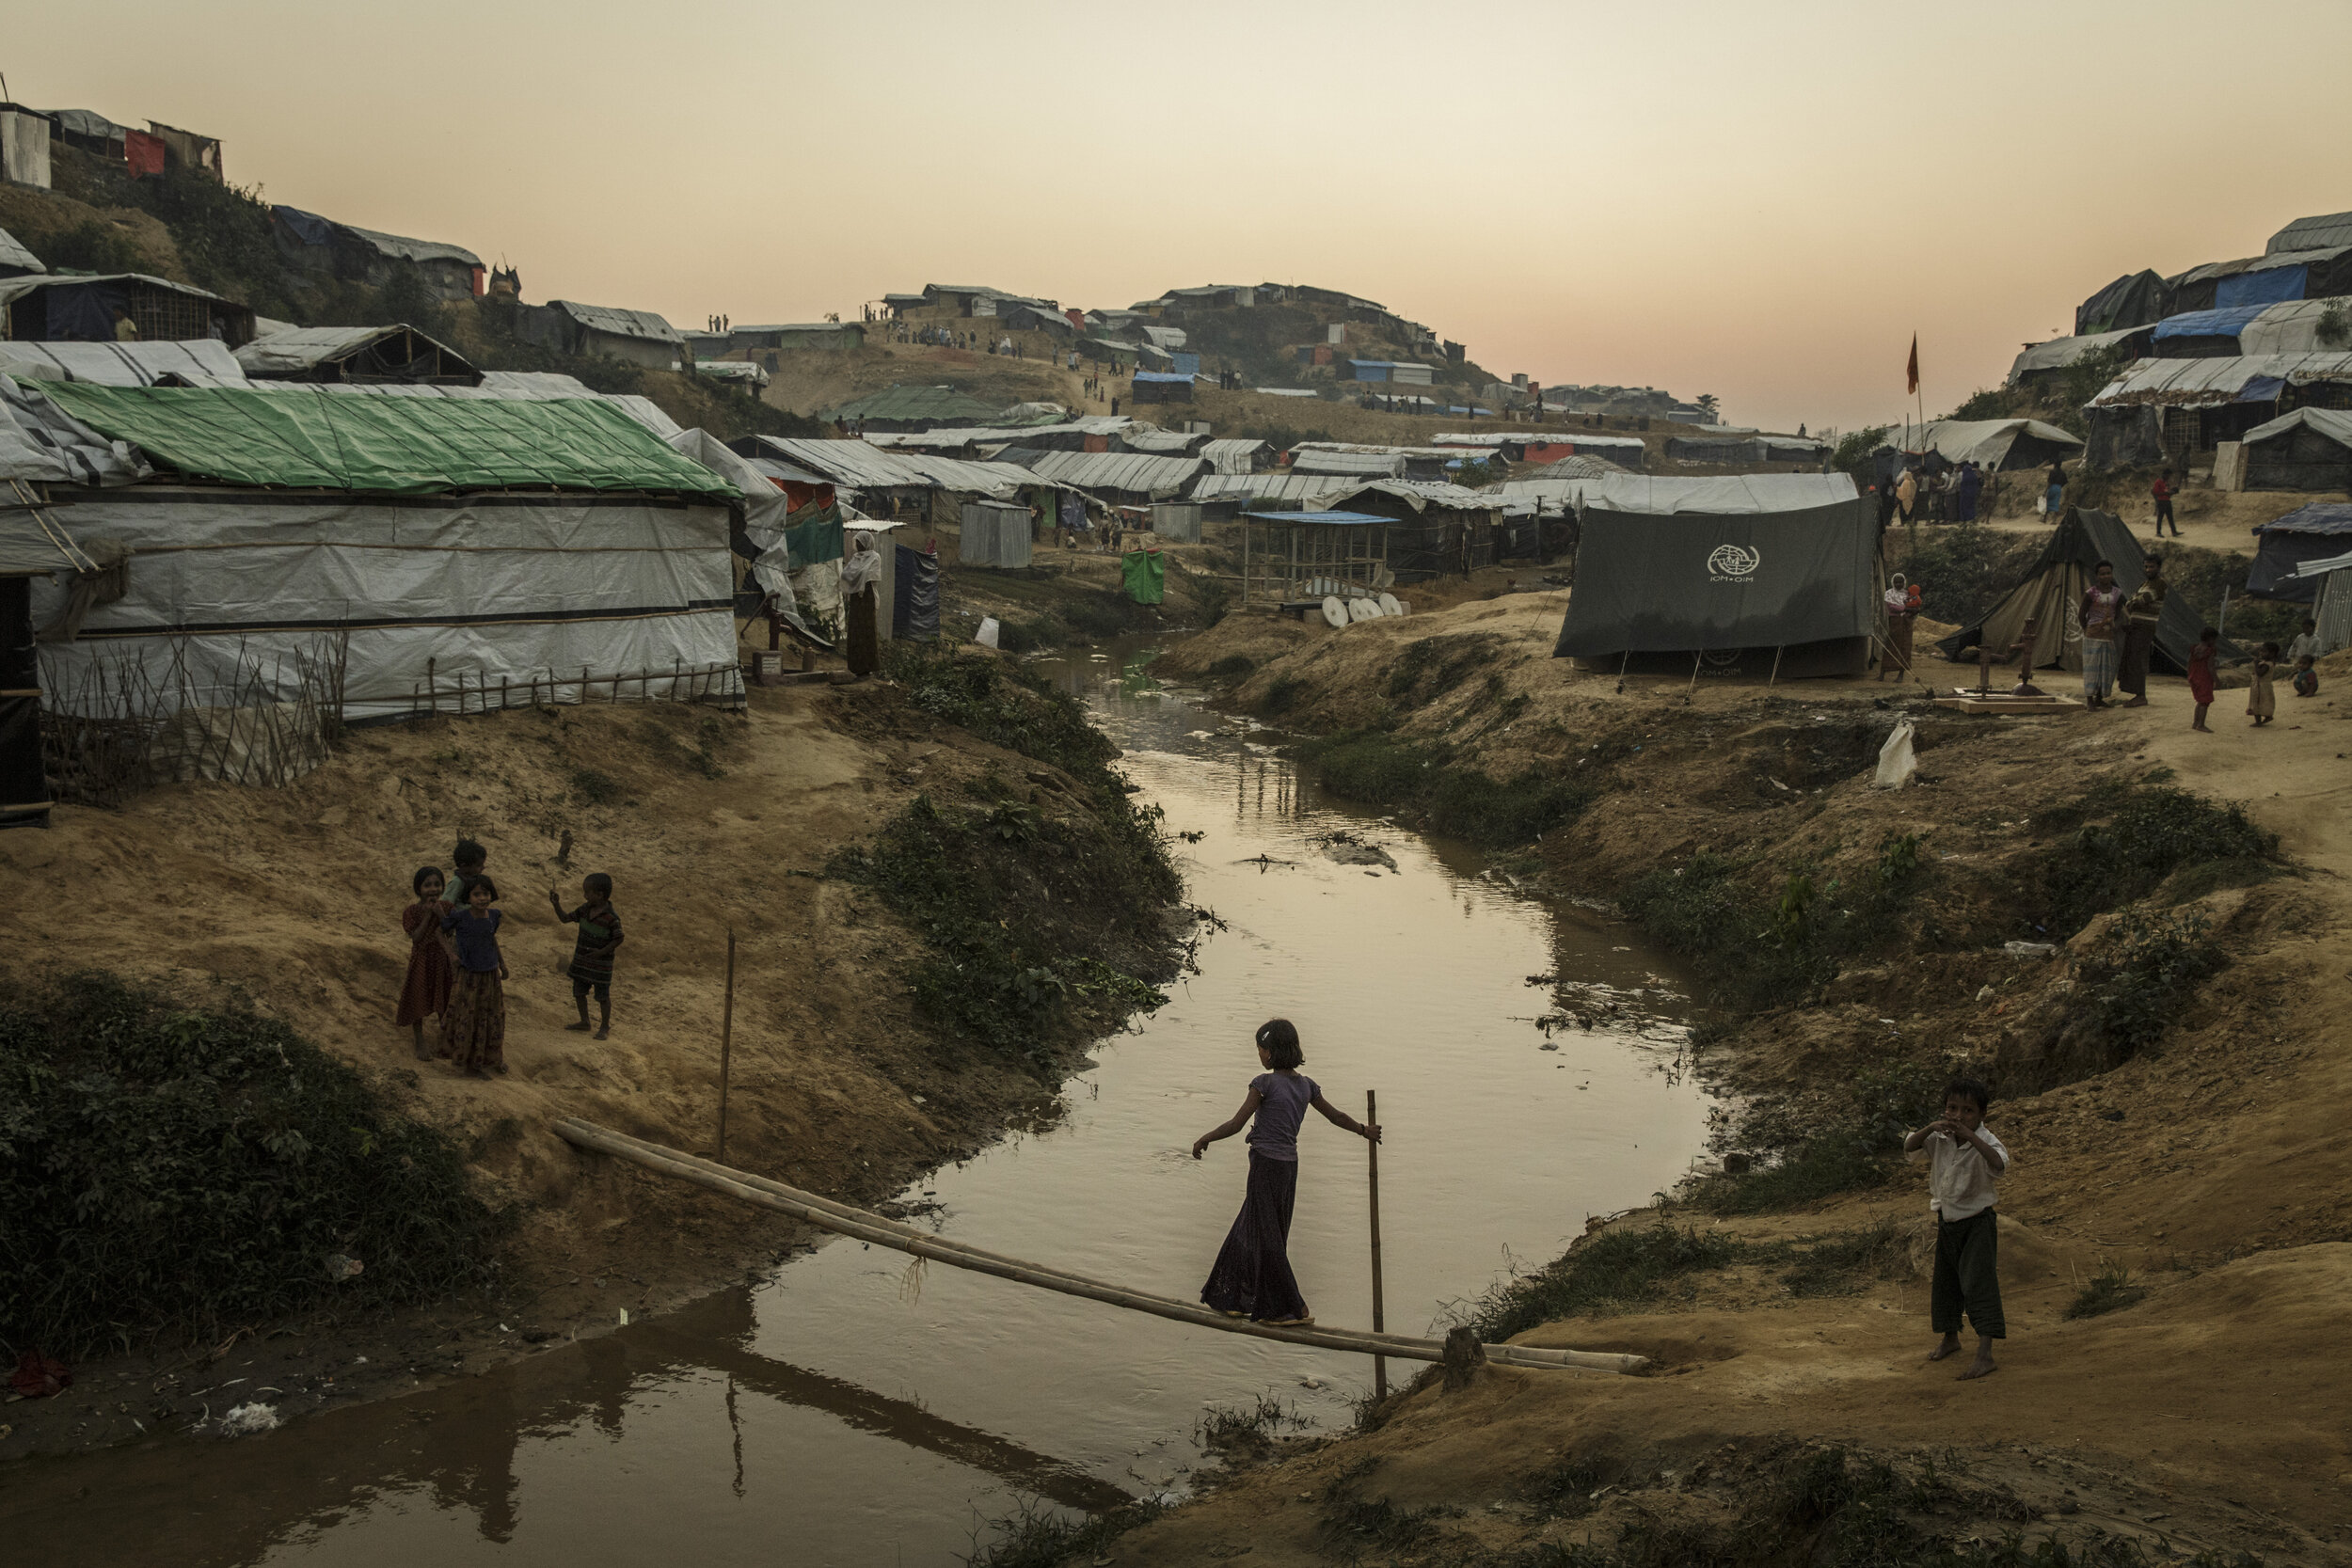 Moynerghona refugee camp, Bangladesh, December 15, 2017.